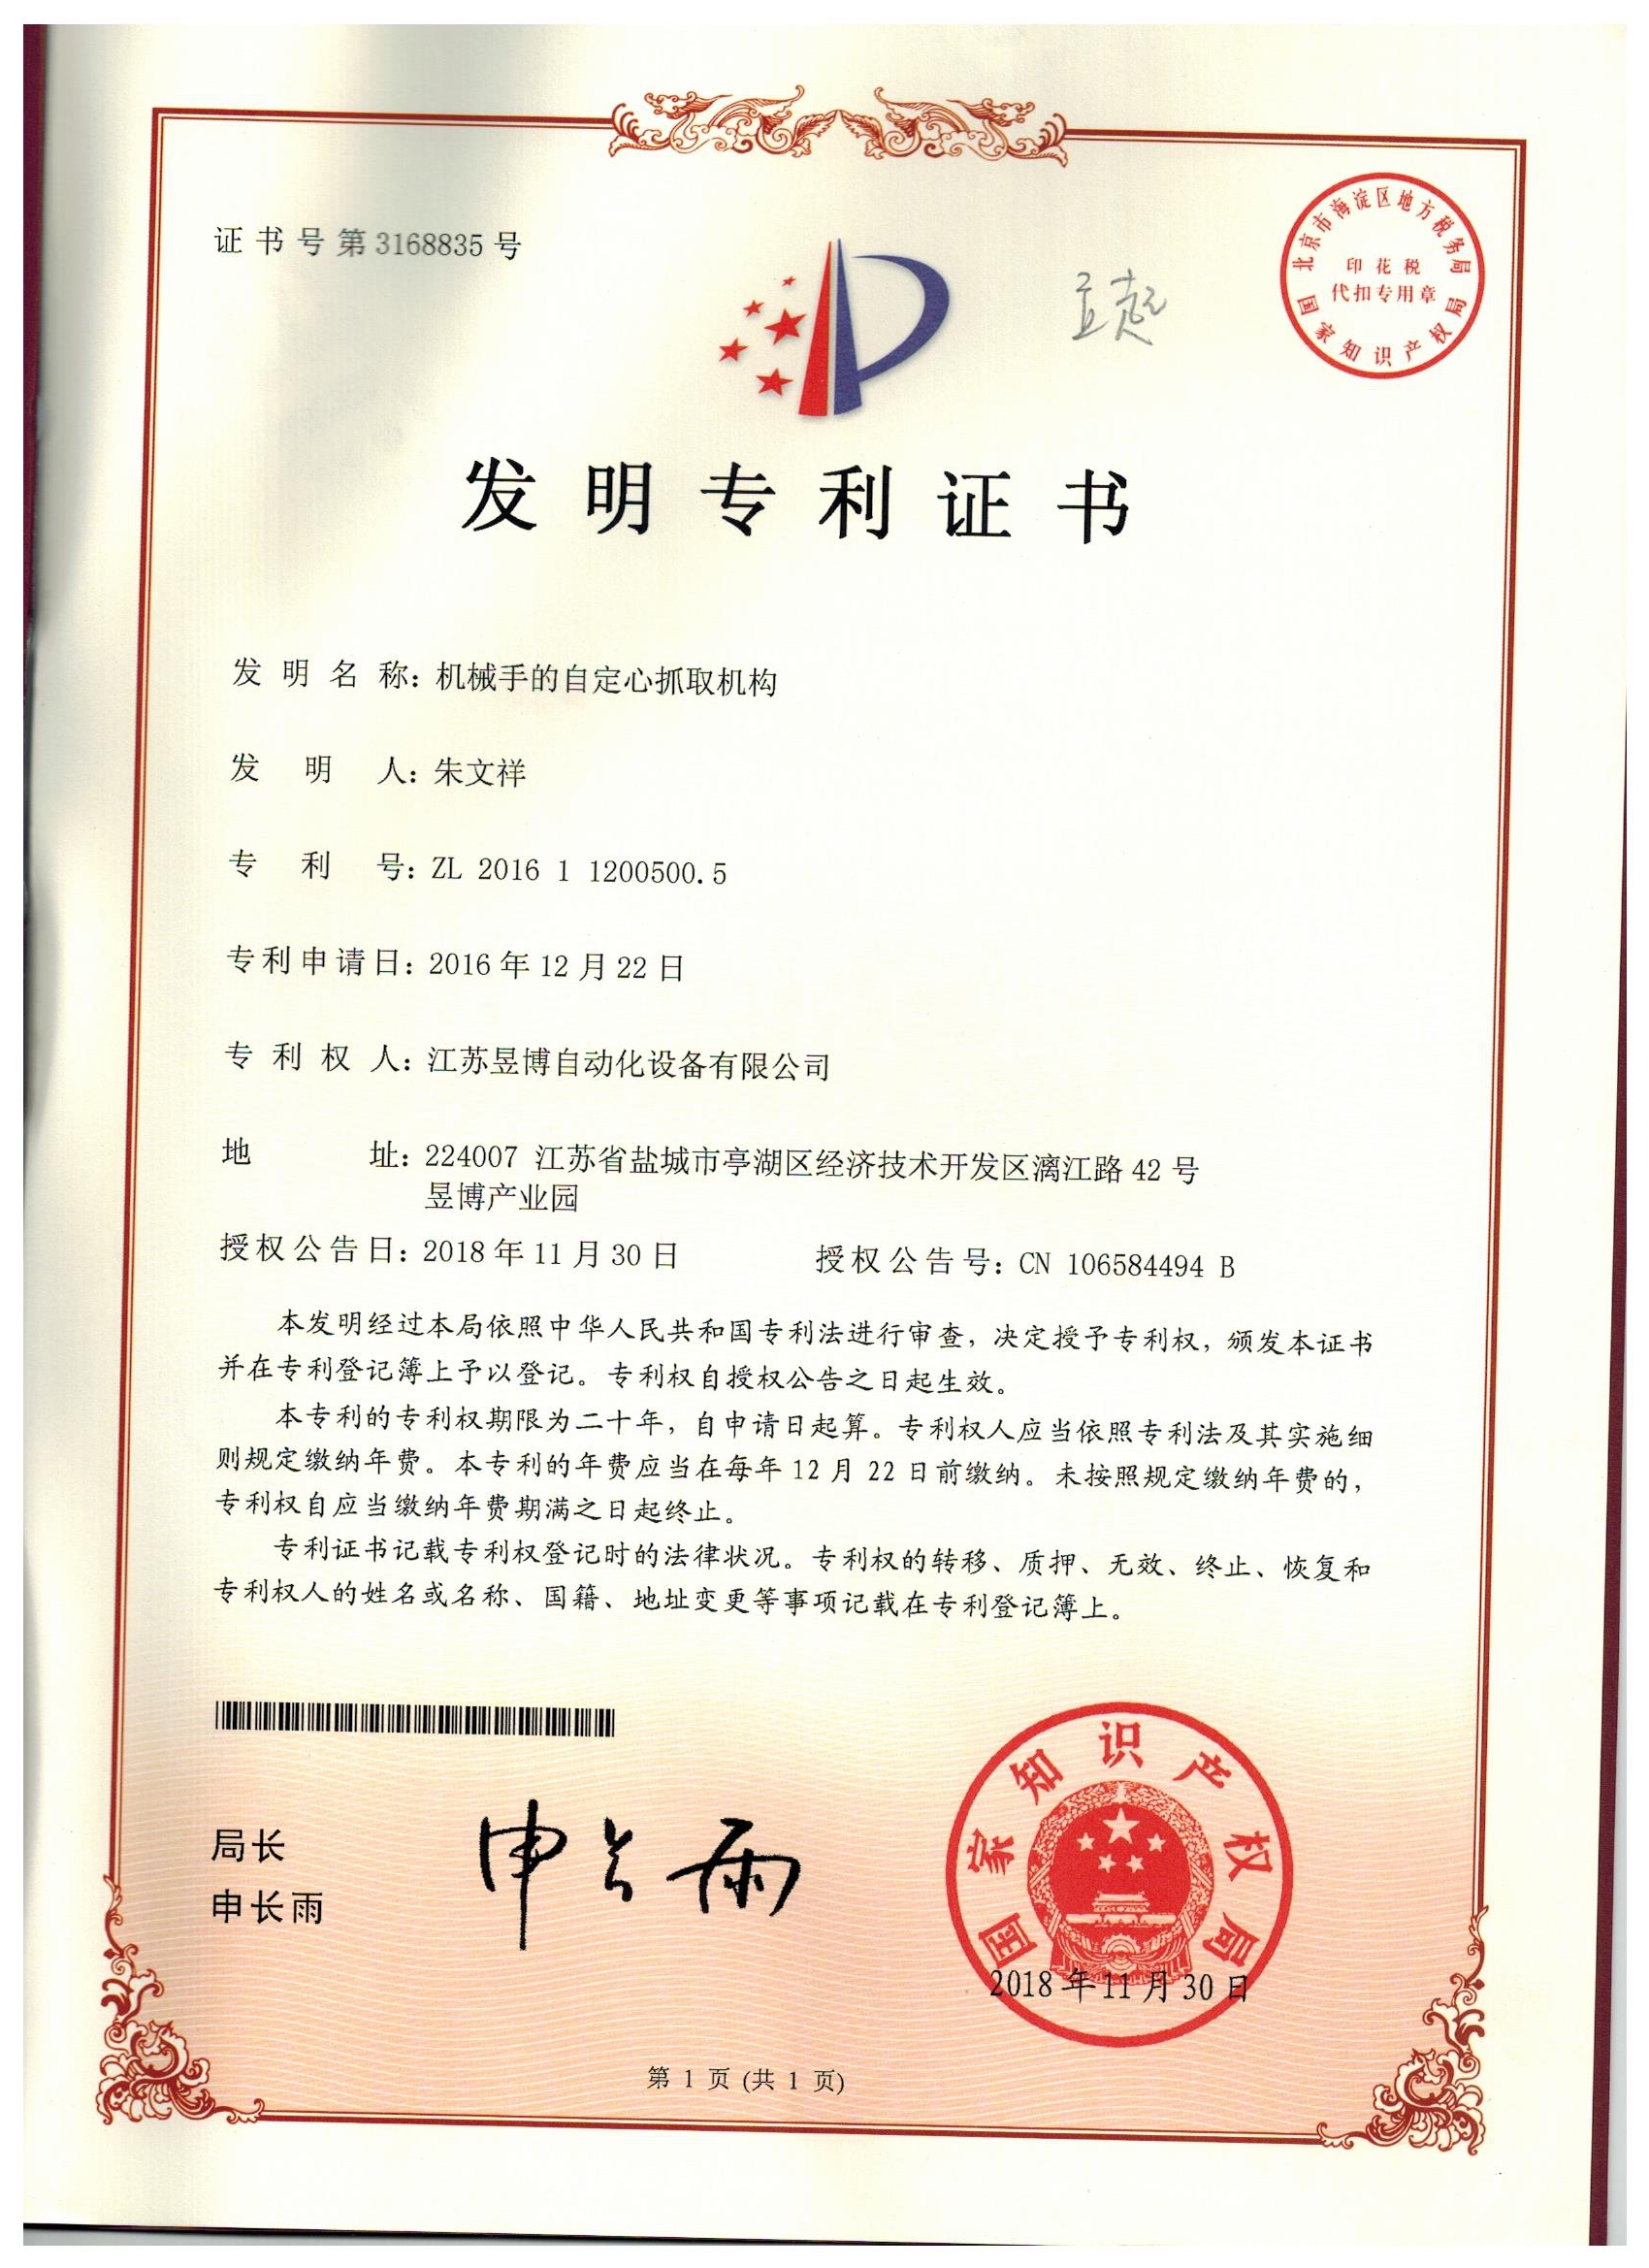 机械手的自定心抓取机构发明zhuanli证书